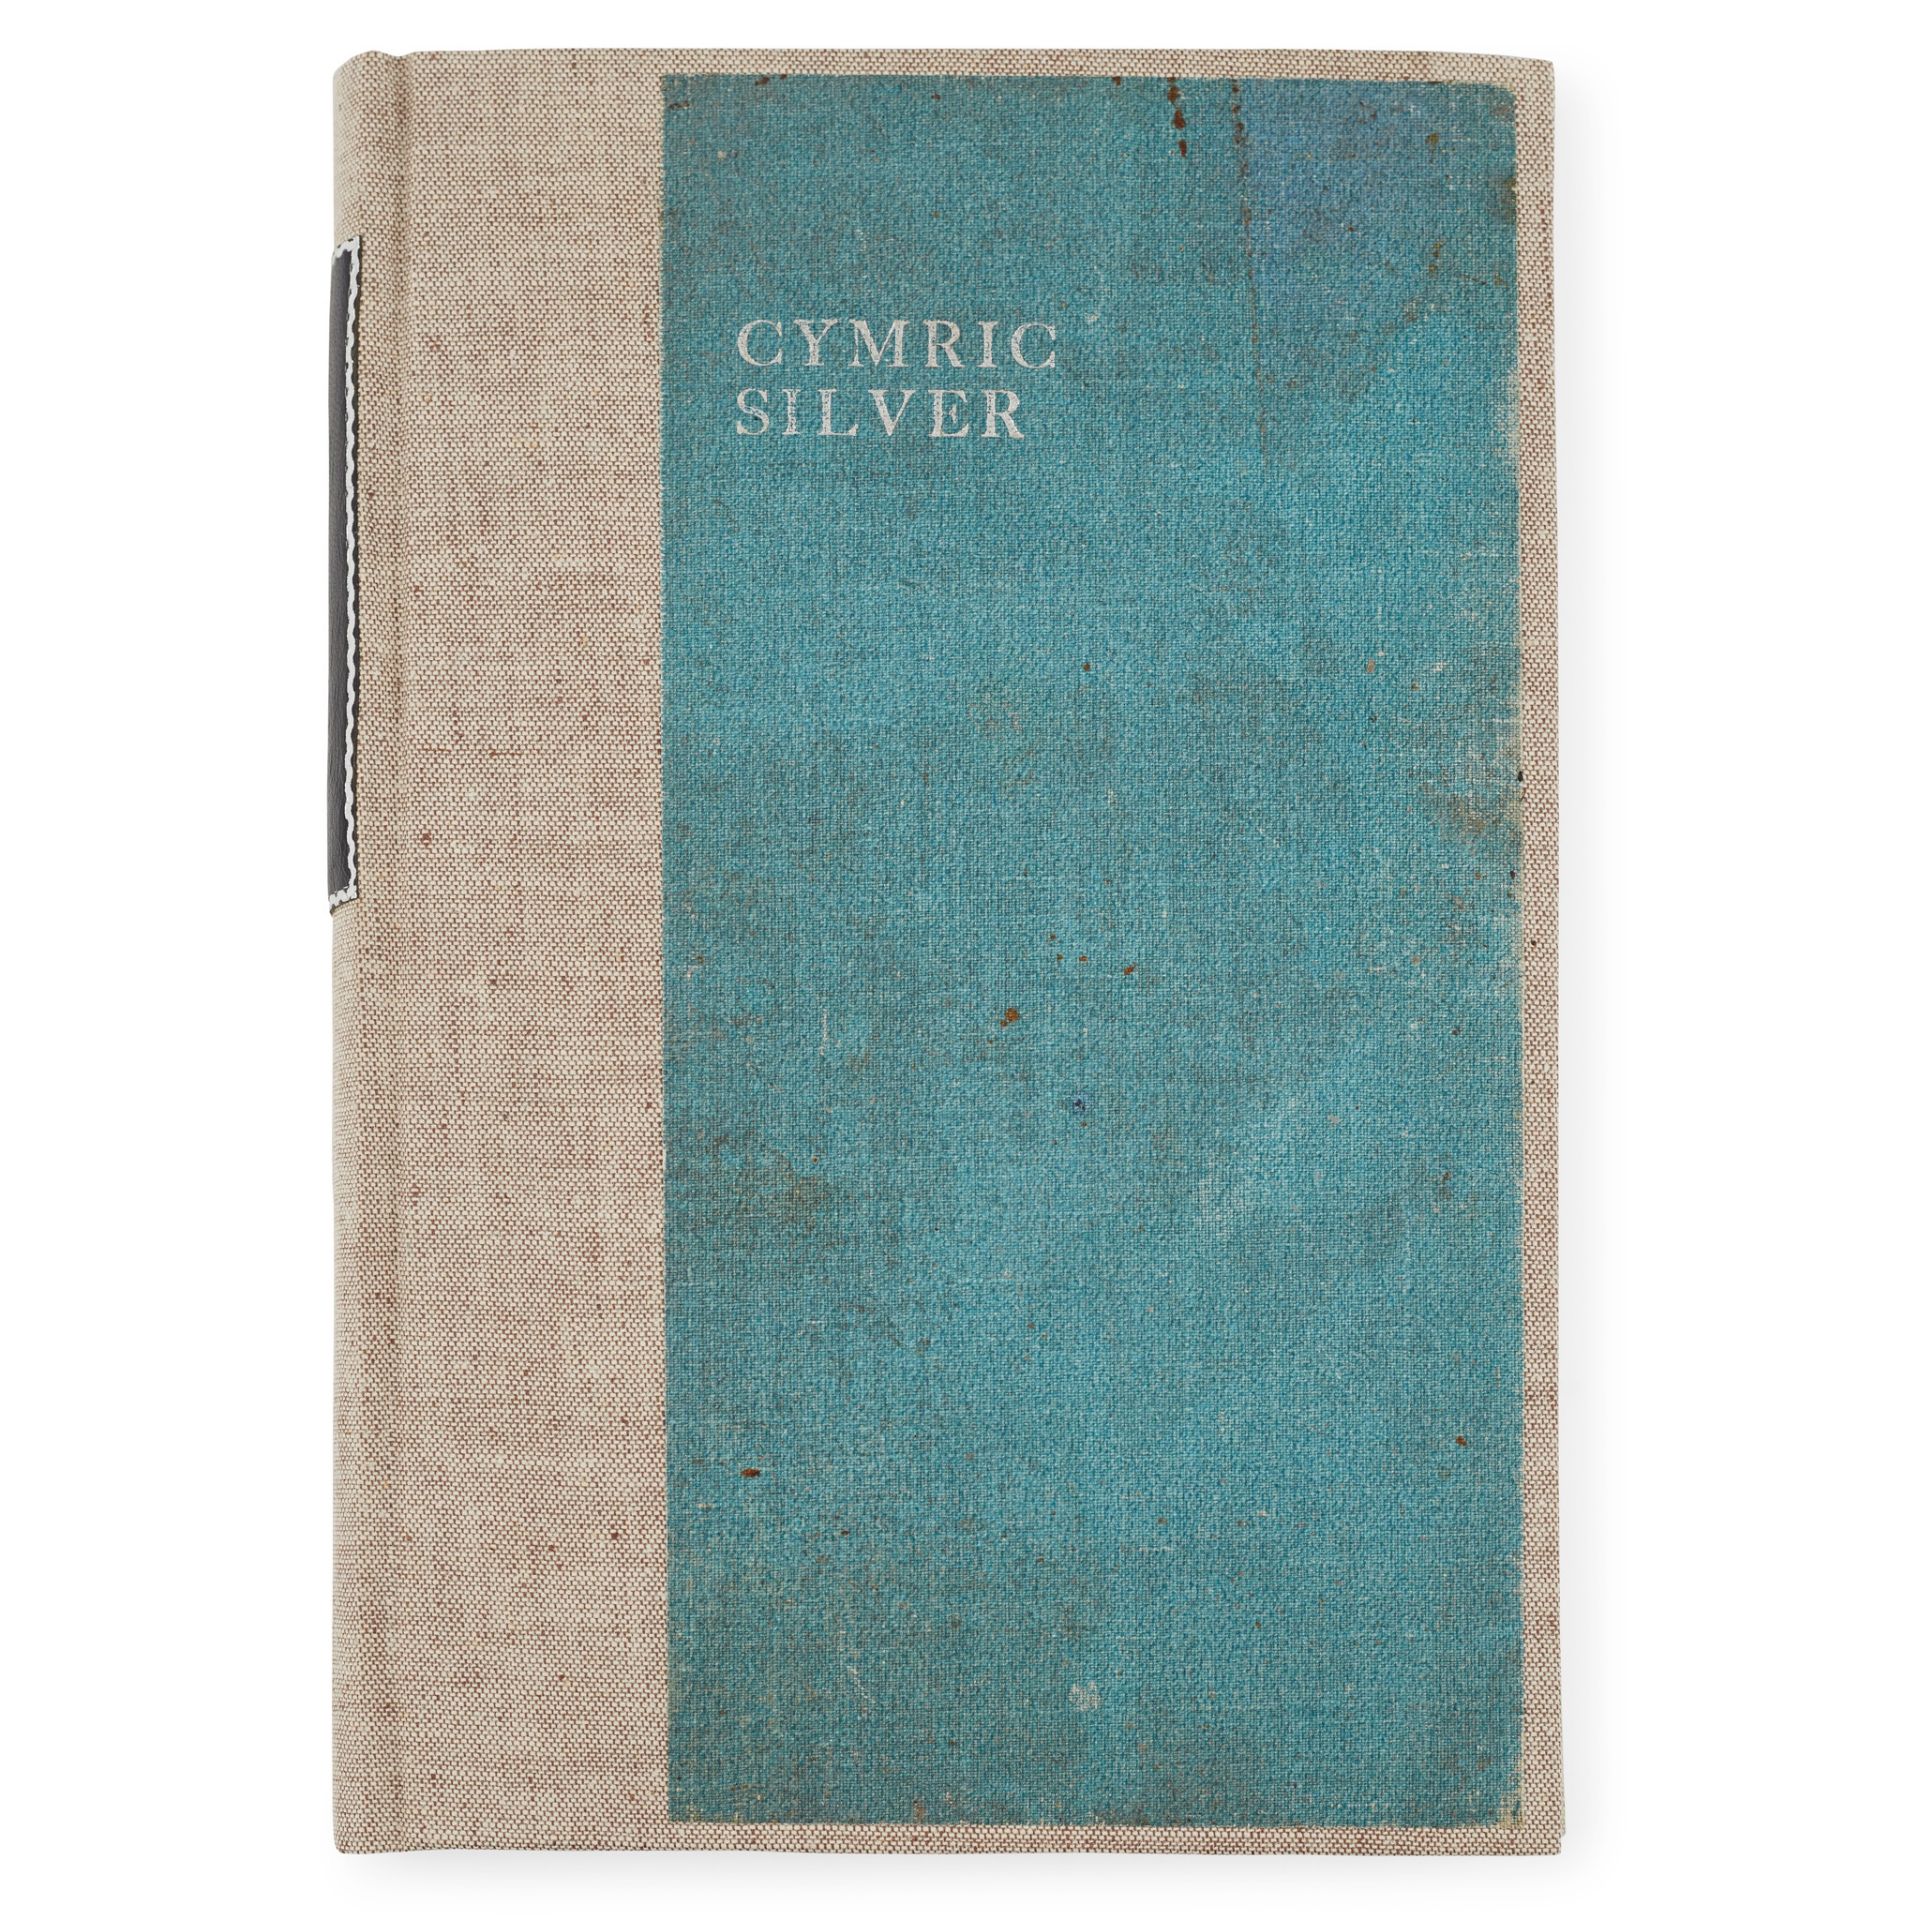 LIBERTY & CO., LONDON 'CYMRIC SILVER' TRADE CATALOGUE, CIRCA 1901